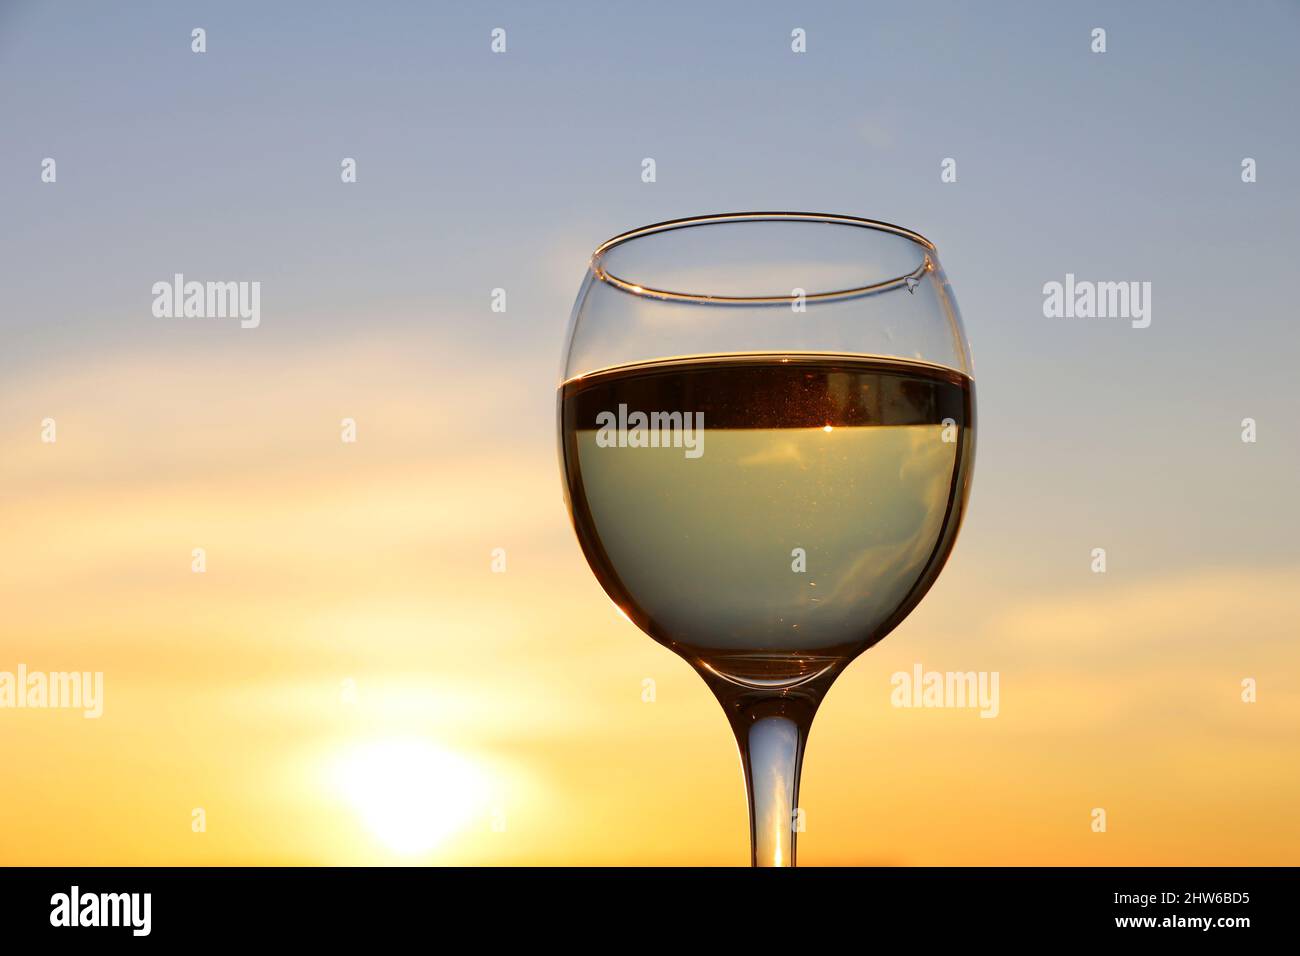 Glas mit Weißwein auf Sonnenuntergangshintergrund, Abendsonne und Himmel mit Wolken spiegeln sich im Glas. Konzept der Feier, Weinindustrie Stockfoto